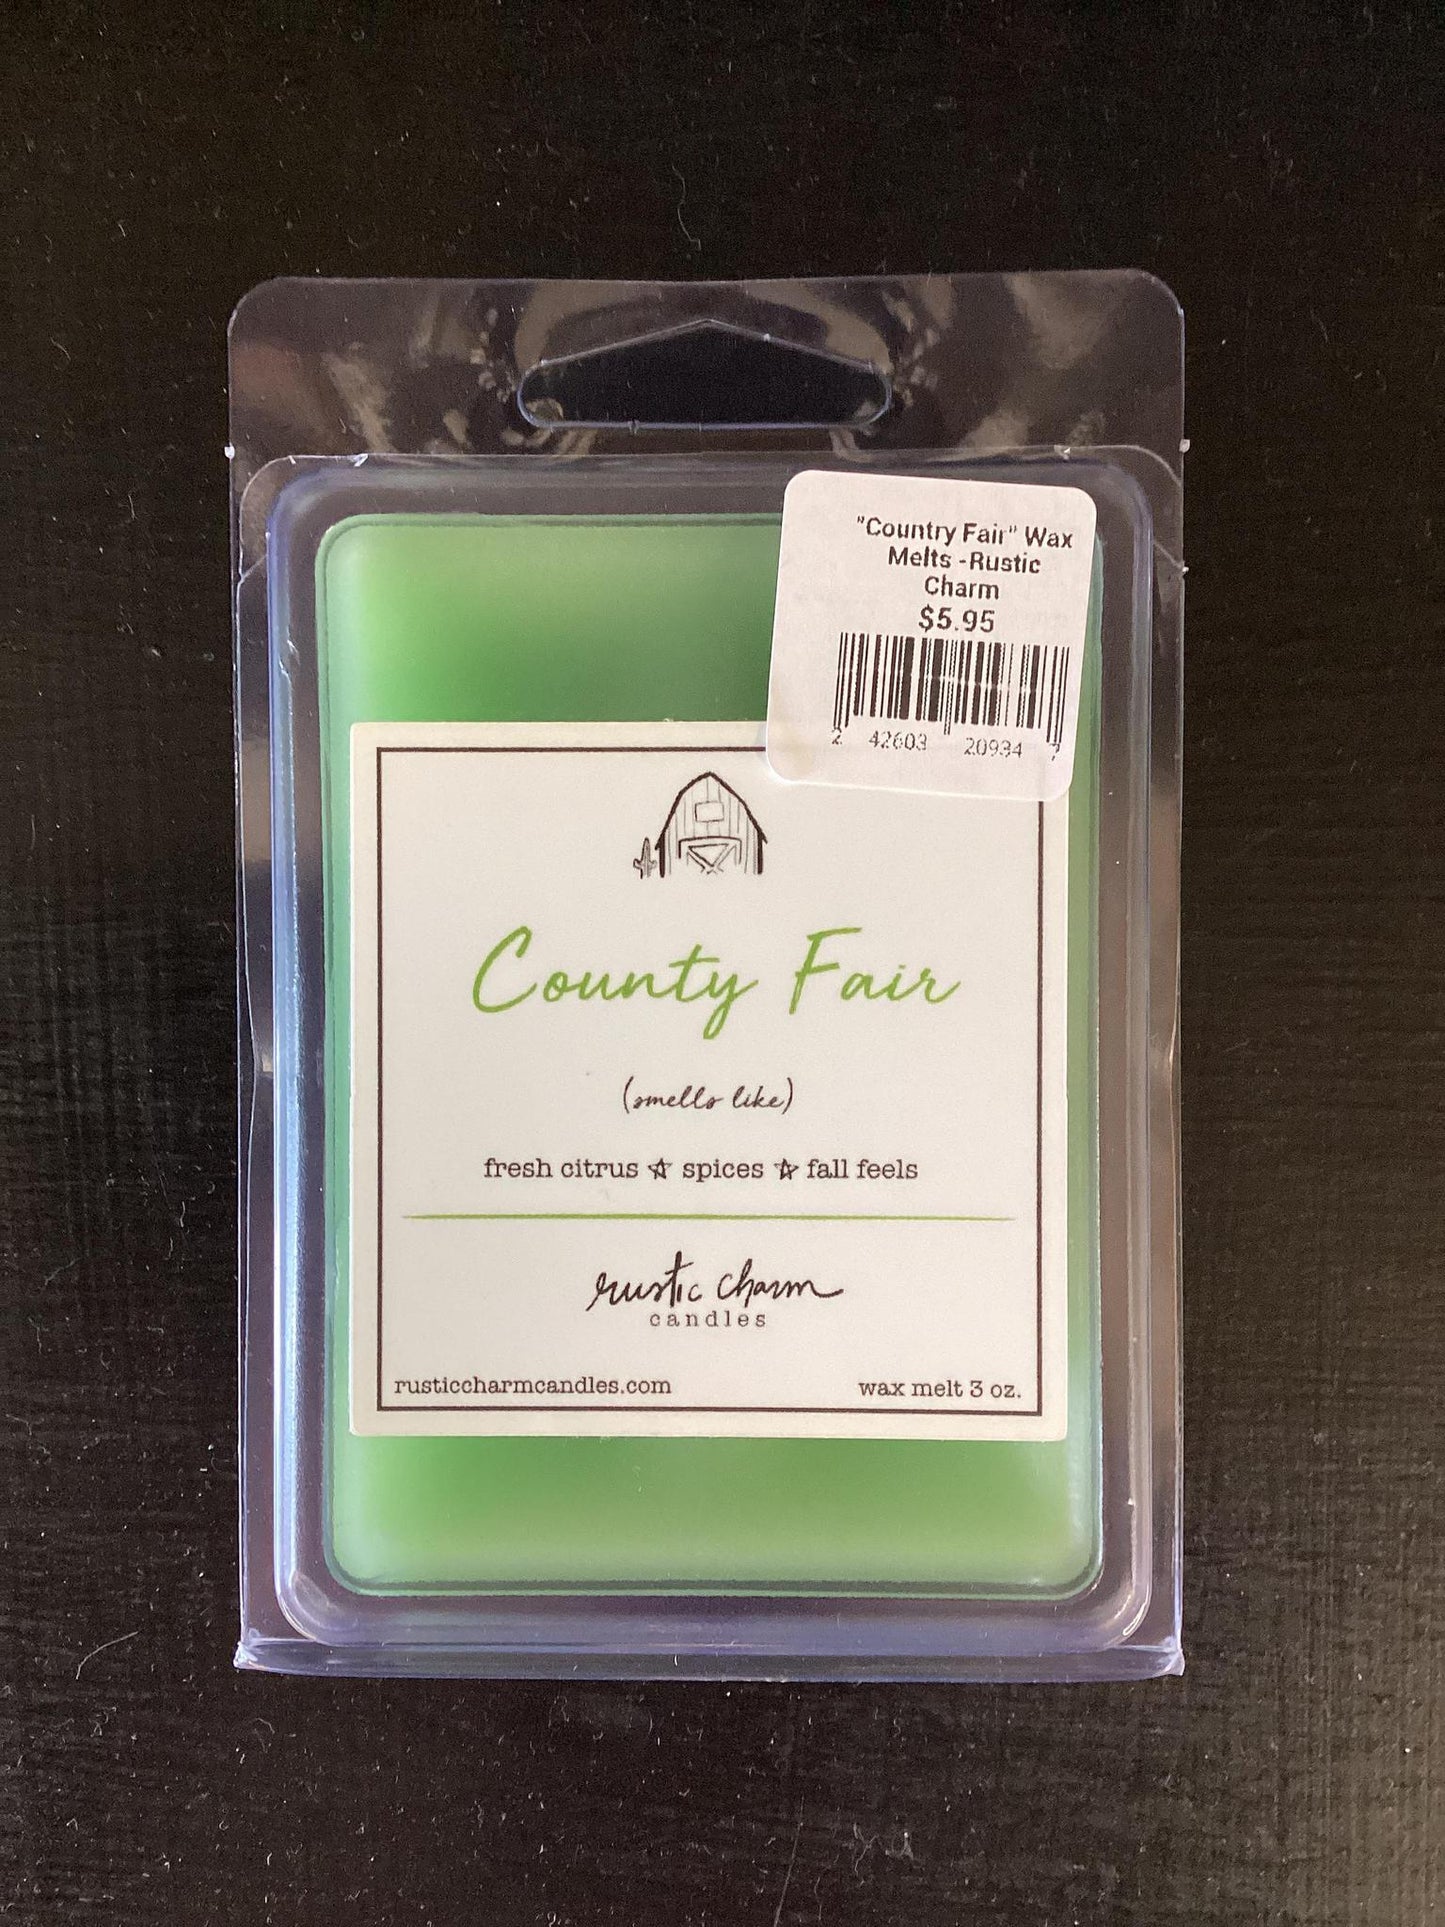 "County Fair" Wax Melts -Rustic Charm